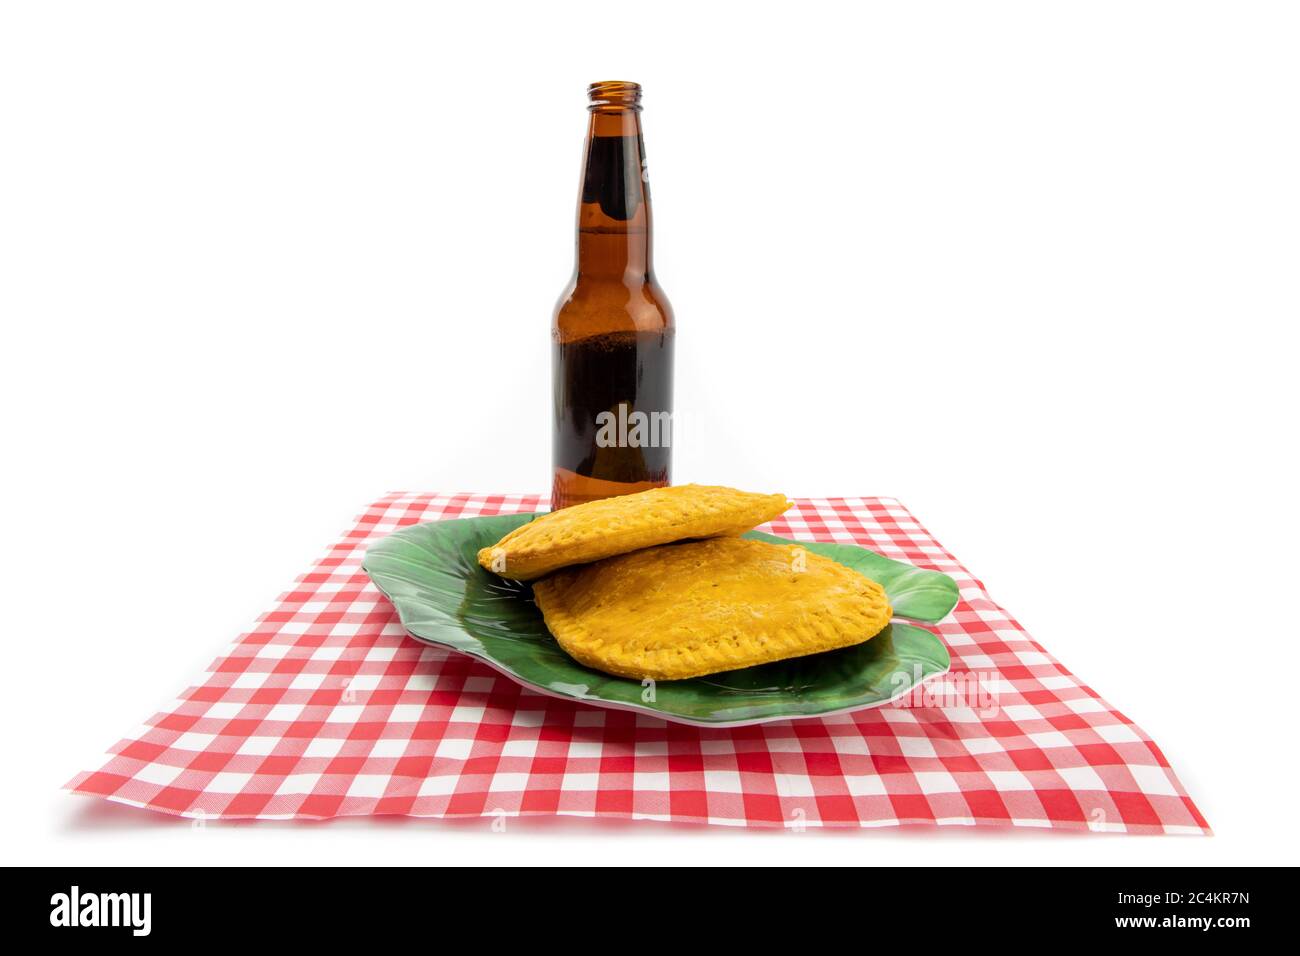 Dos empanadas jamaiquanas en un papel de cuadros rojo y blanco con una botella de cerveza no identificada Foto de stock